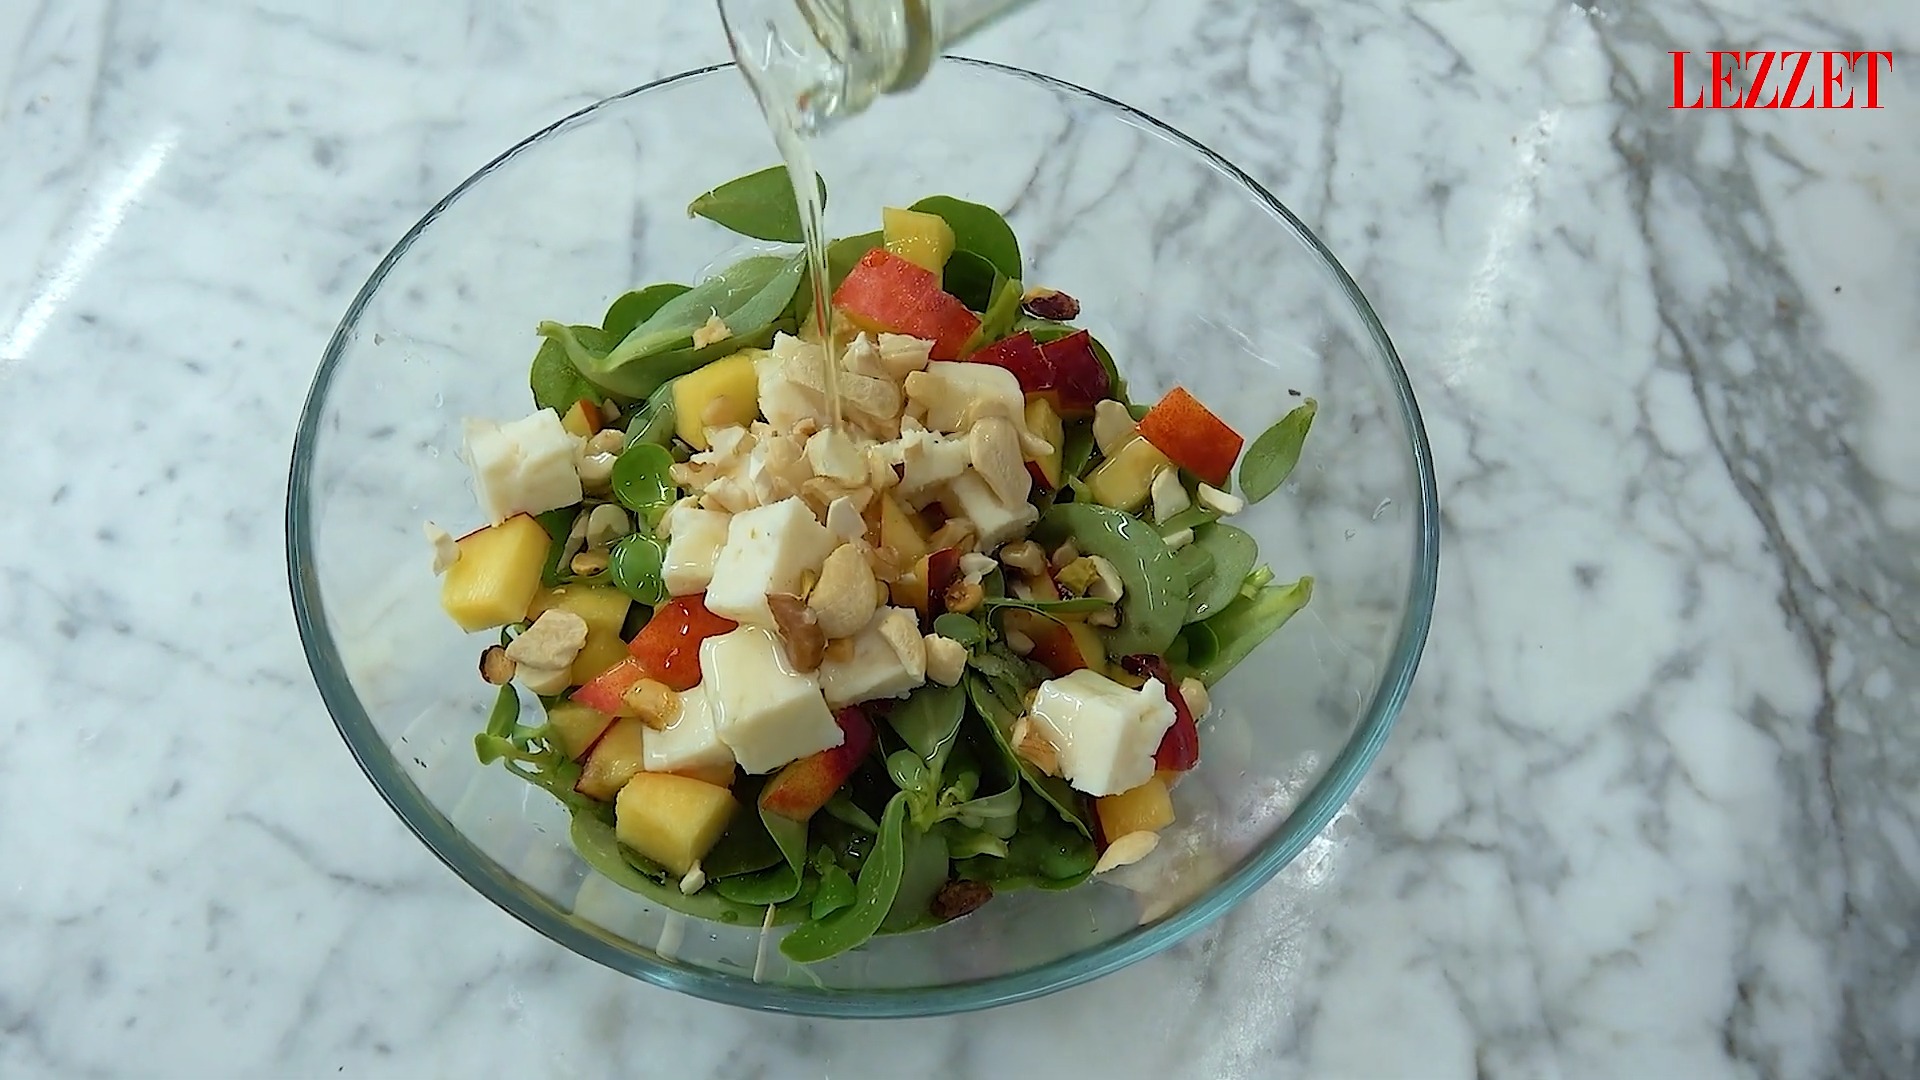 zeytinyağı eklenen salata